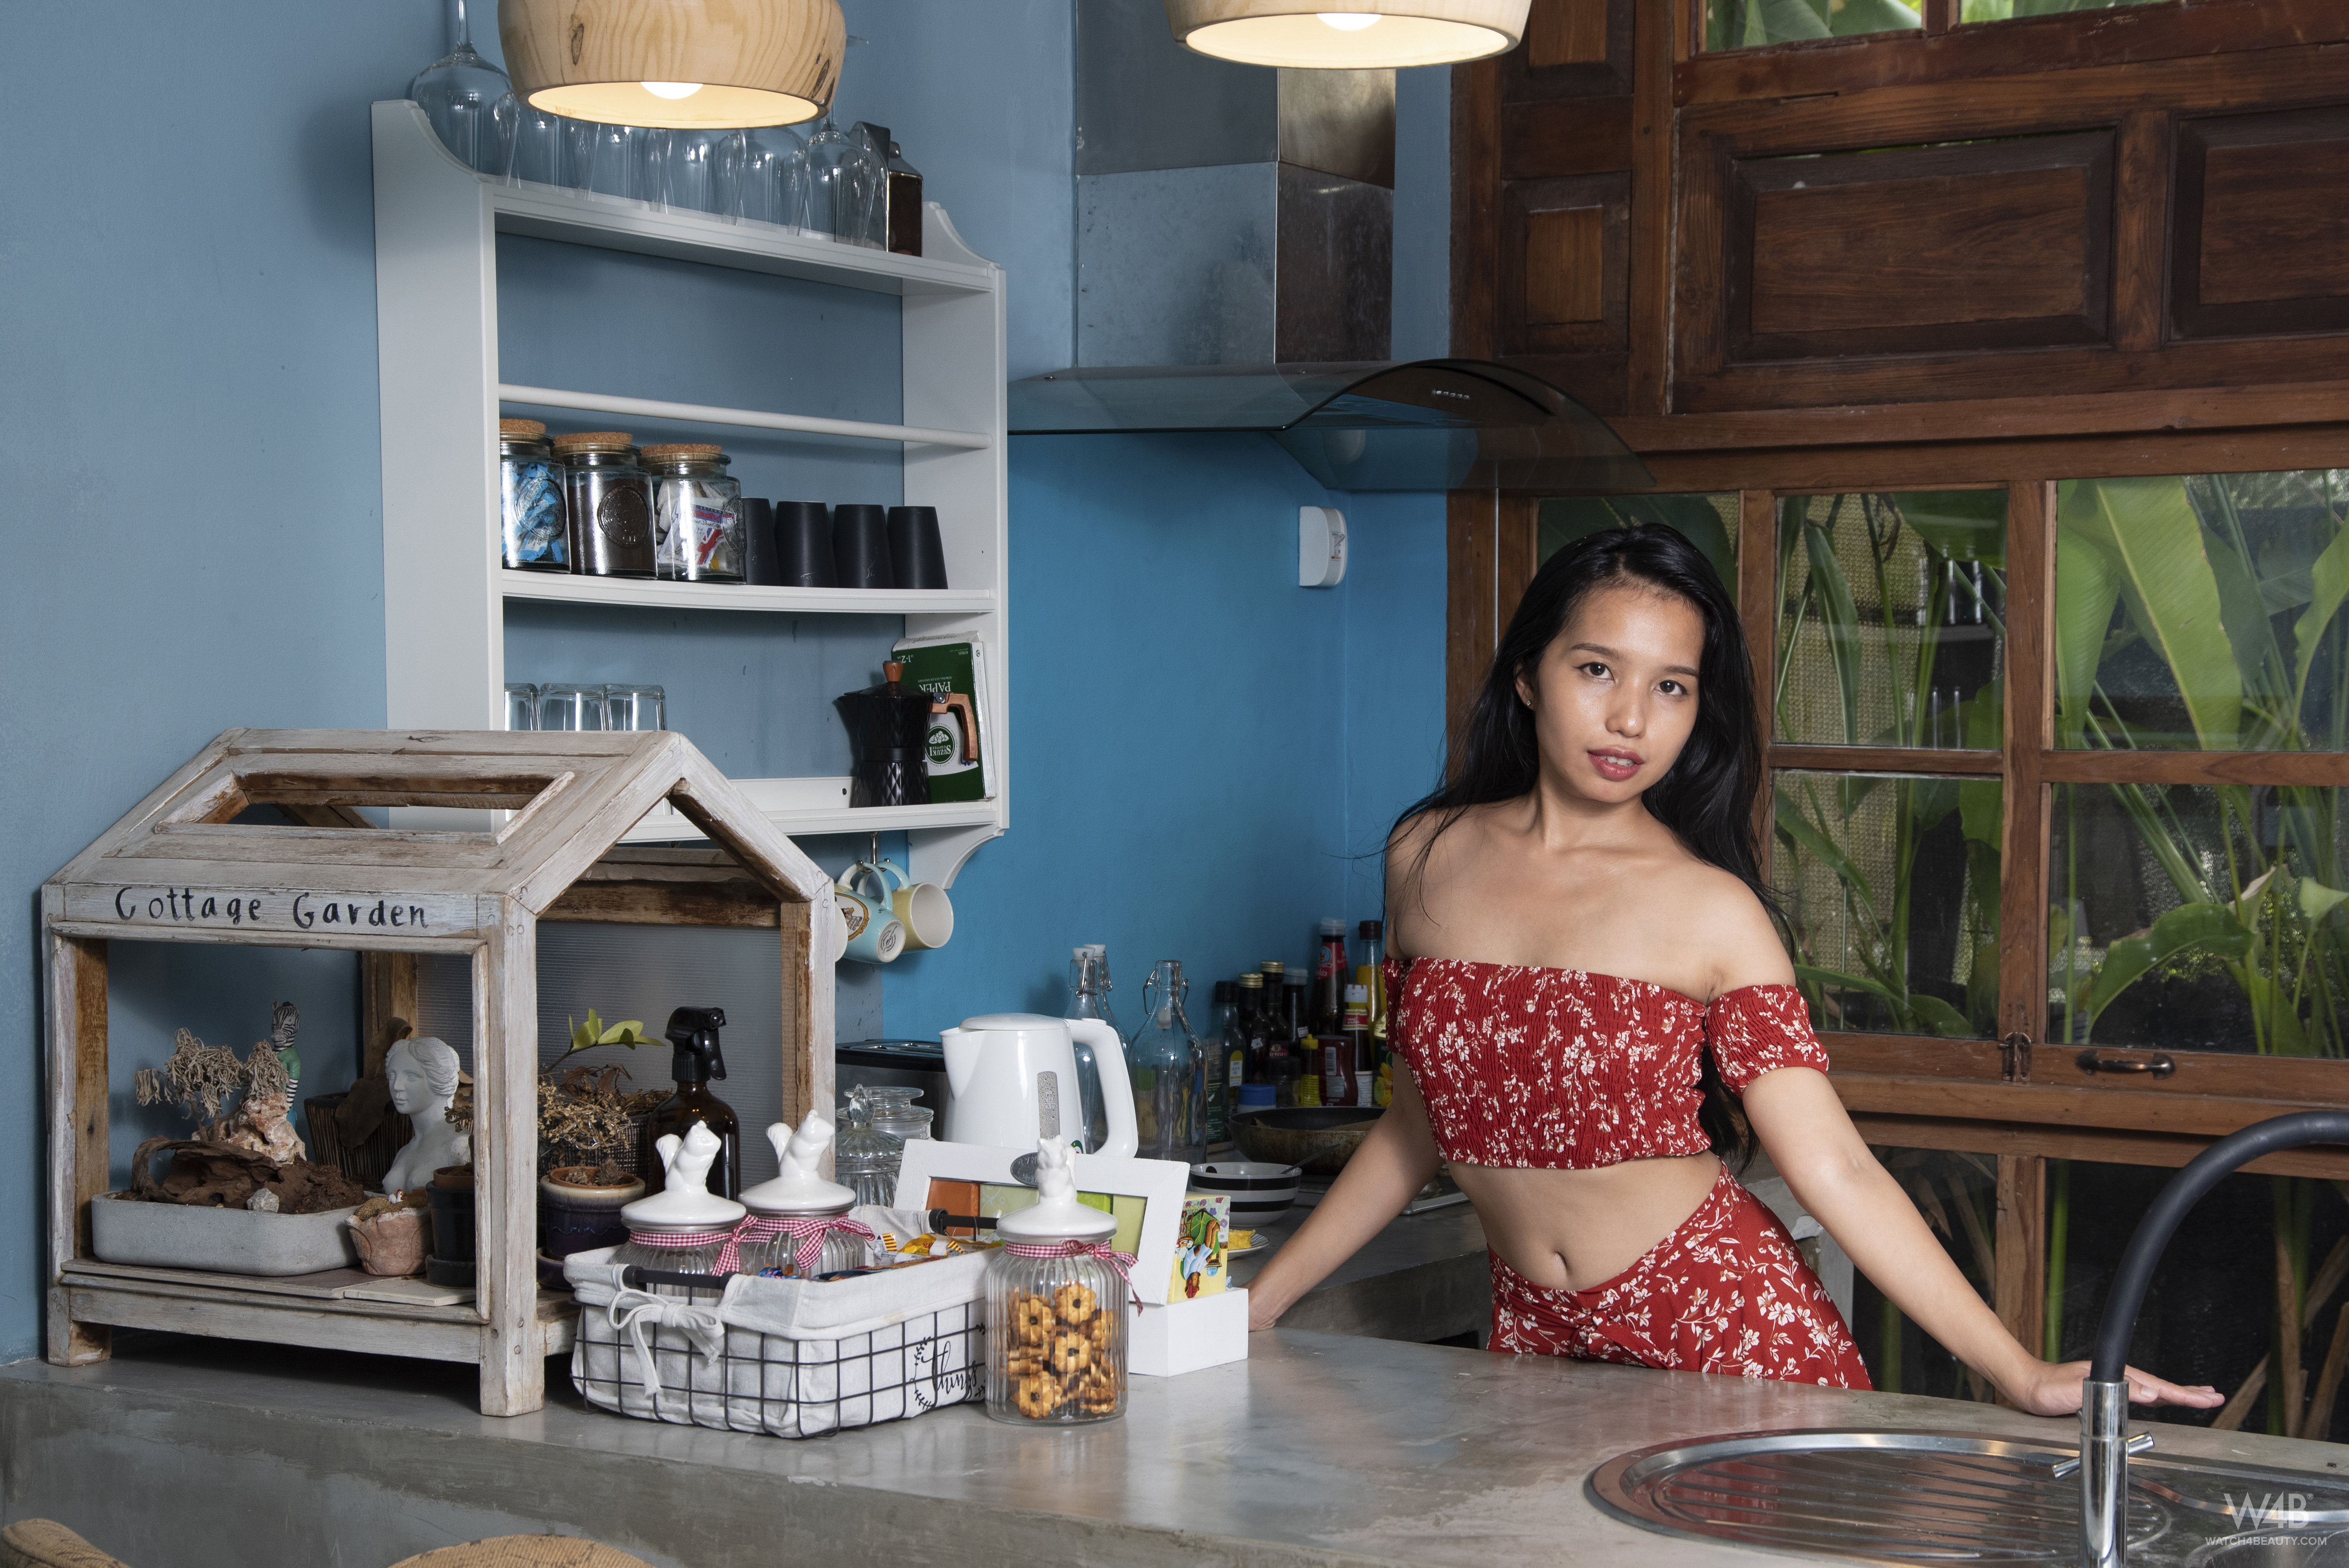 Asian Women Model Long Hair Dark Hair Short Tops Skirt Bare Shoulders Kitchen Shelves Jars Baskets S 6000x4005